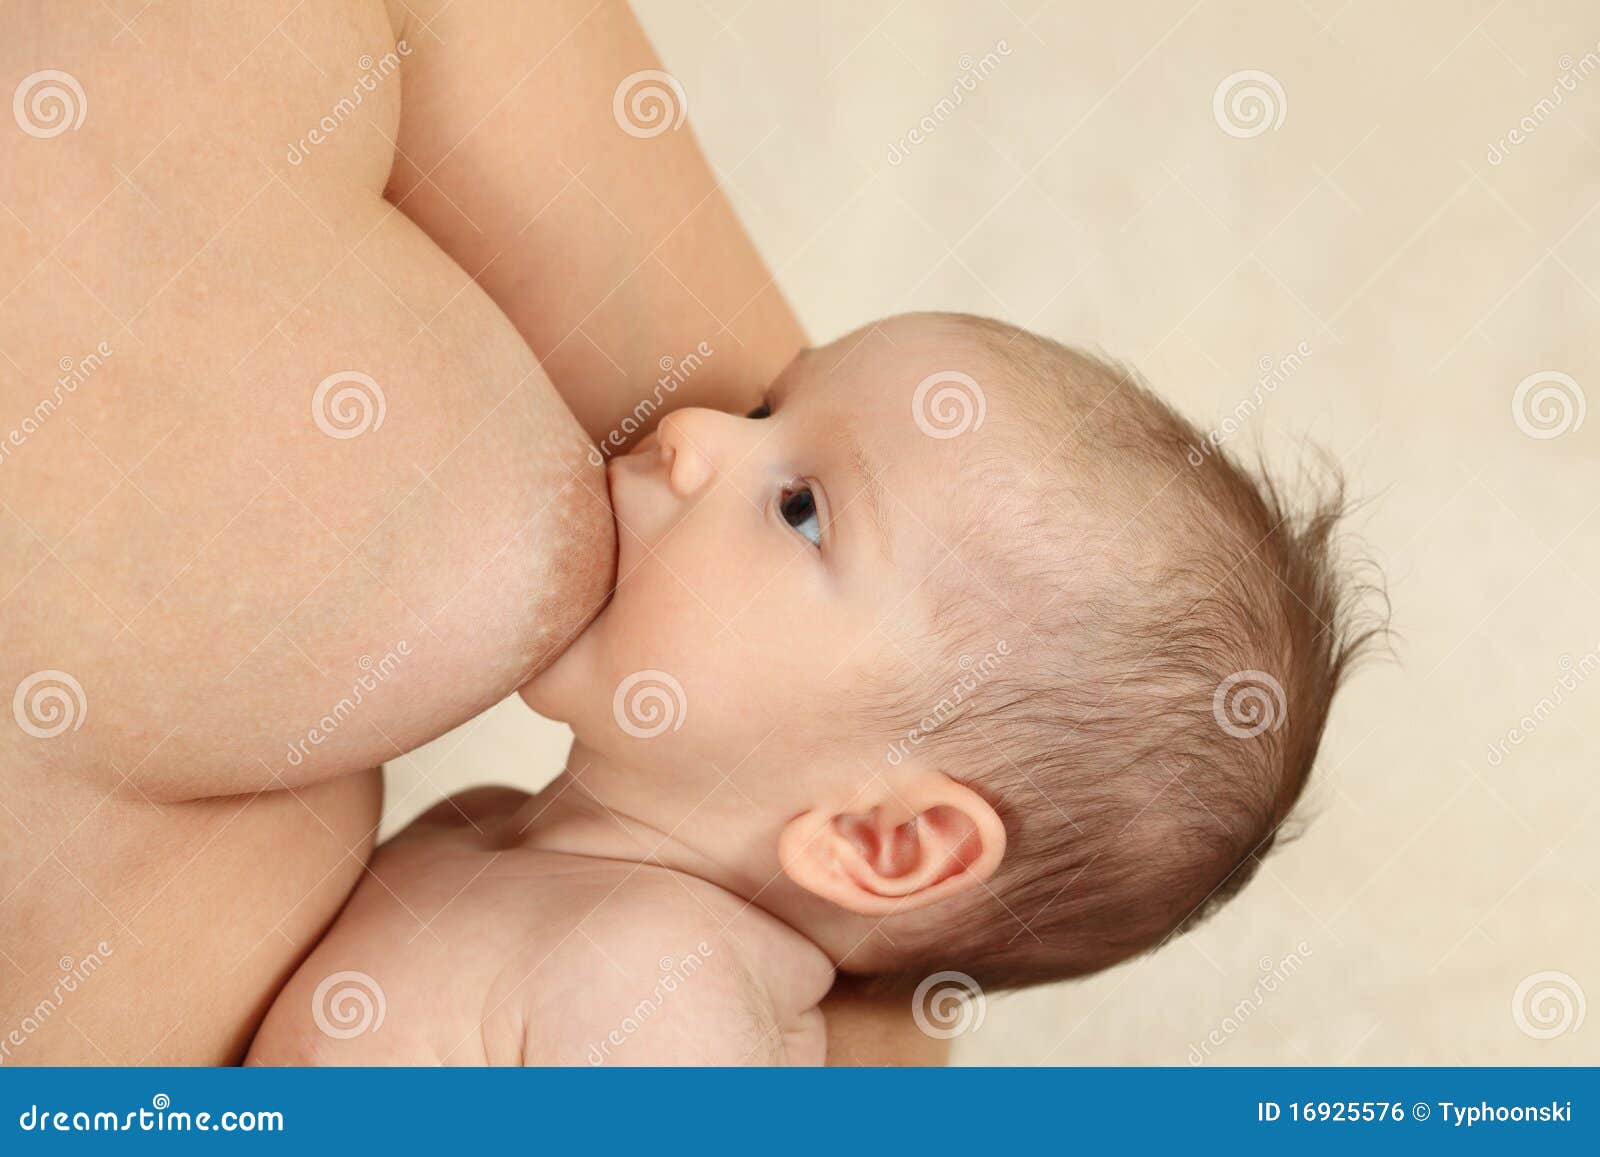 кормящая мама герпес на груди фото 106